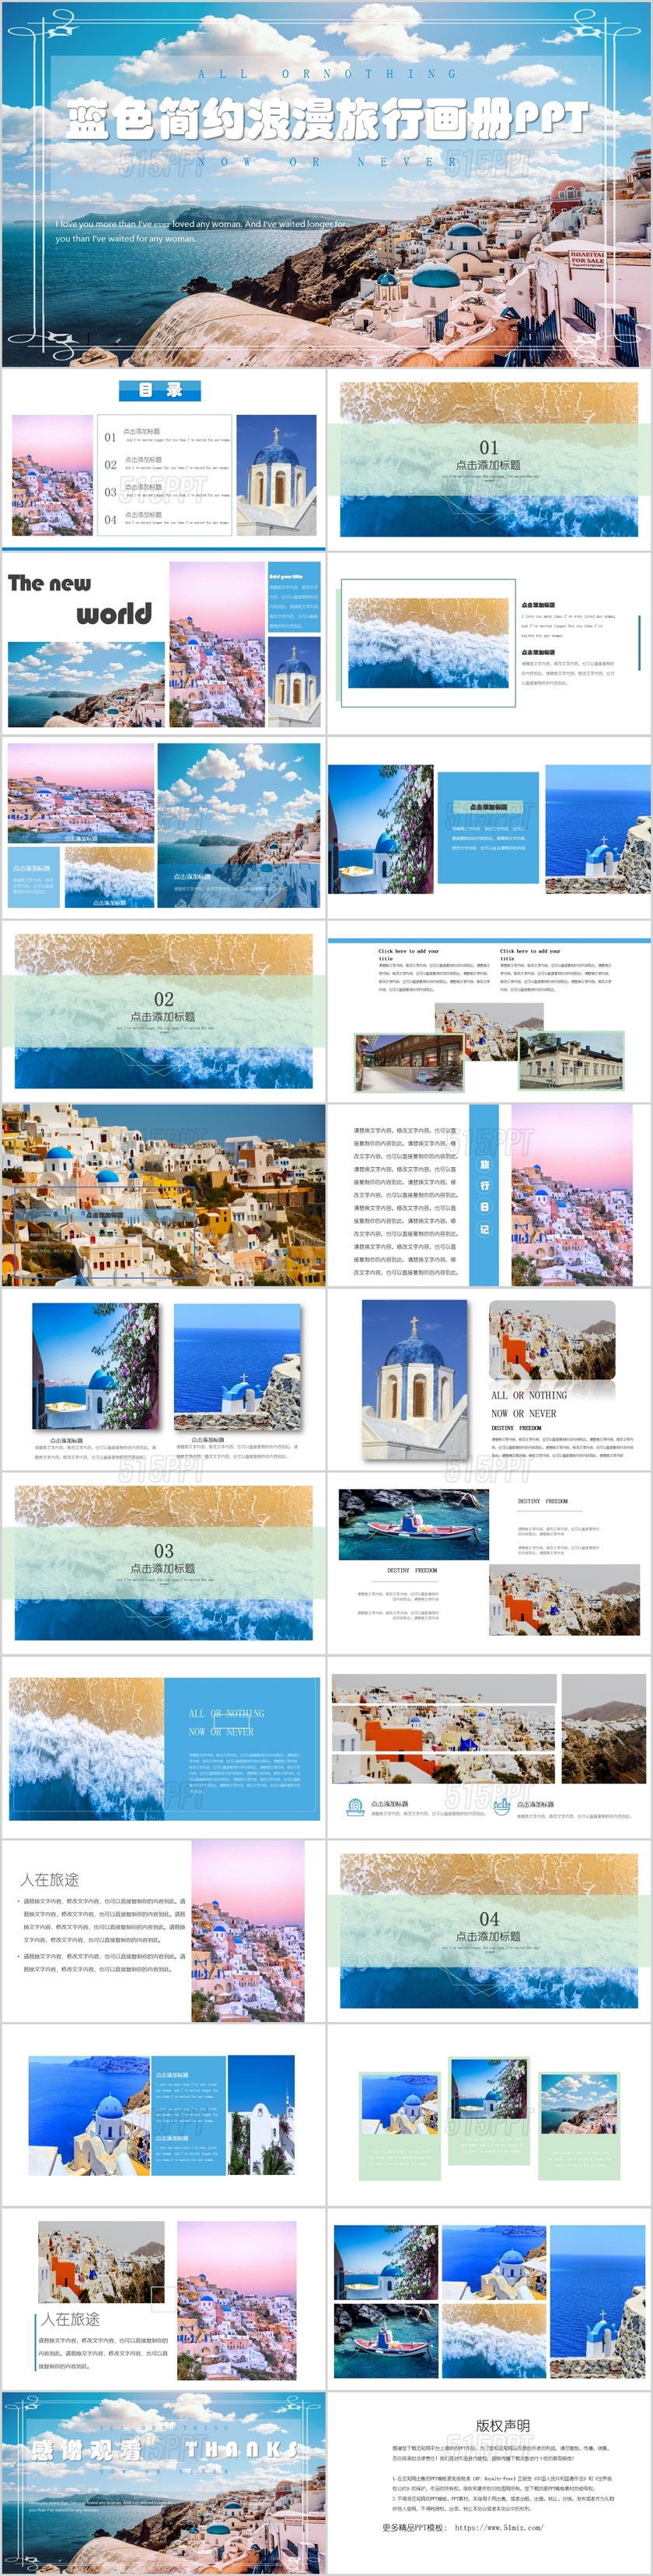 蓝色简约小清新浪漫旅行旅行画册相册展示PPT通用模板